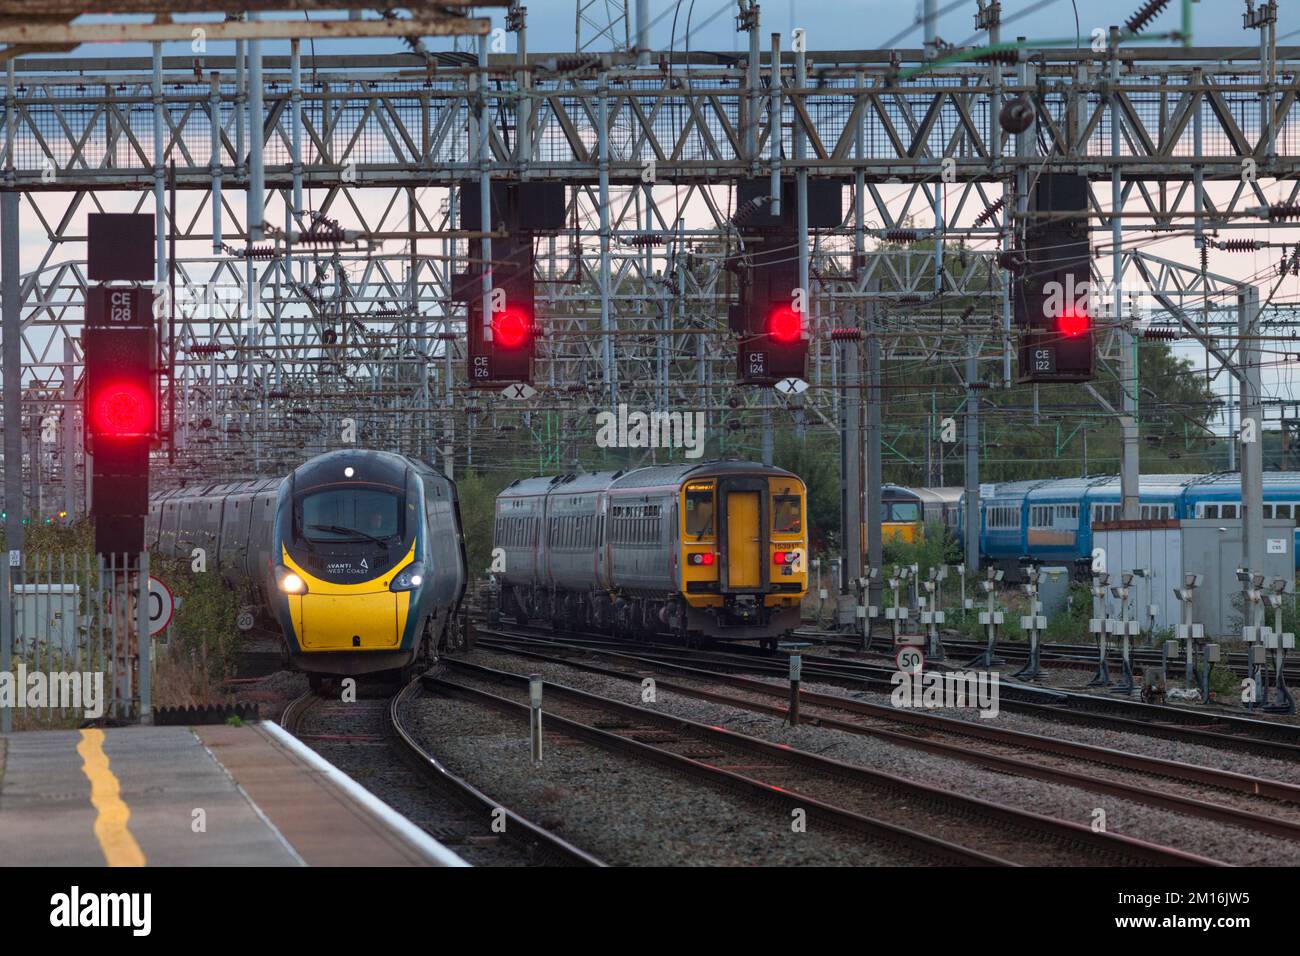 Avanti West Coast Pendolino treno e trasporto per lo sprinter Wales passando al bivio di Crewe sud con segnali rossi su un portale Foto Stock